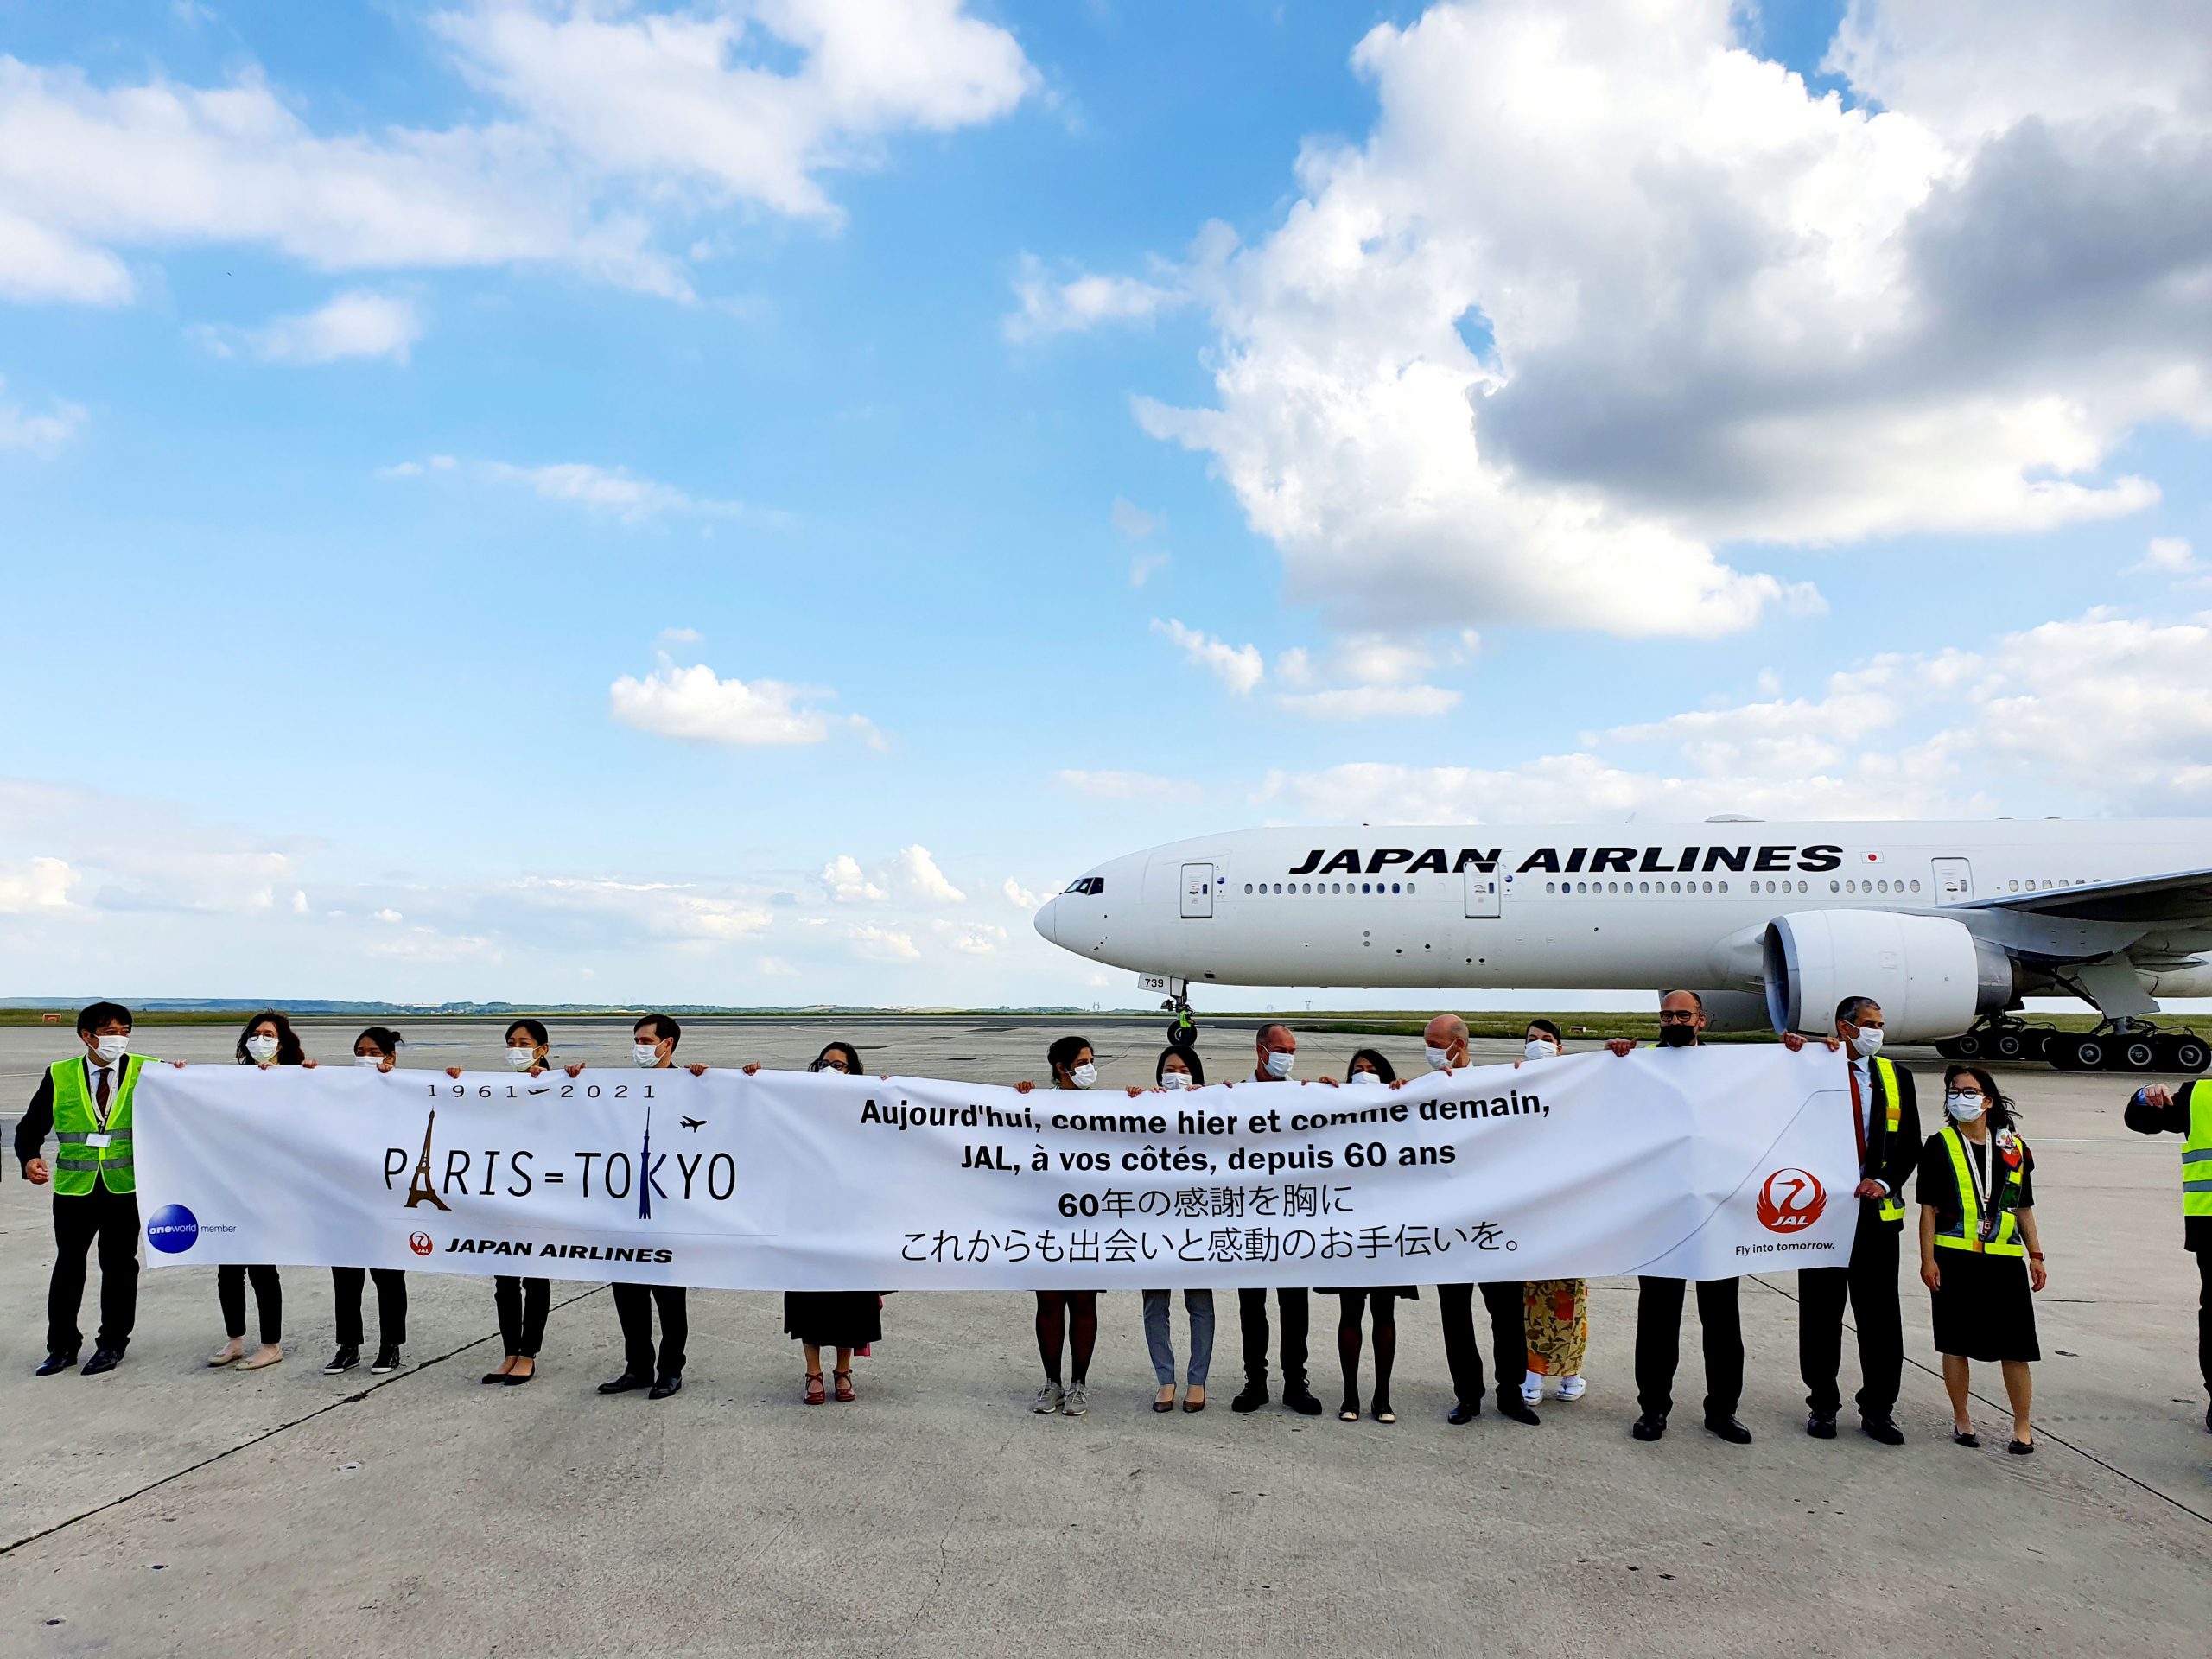 L’Union européenne signe un accord aérien avec le Japon 14 Air Journal